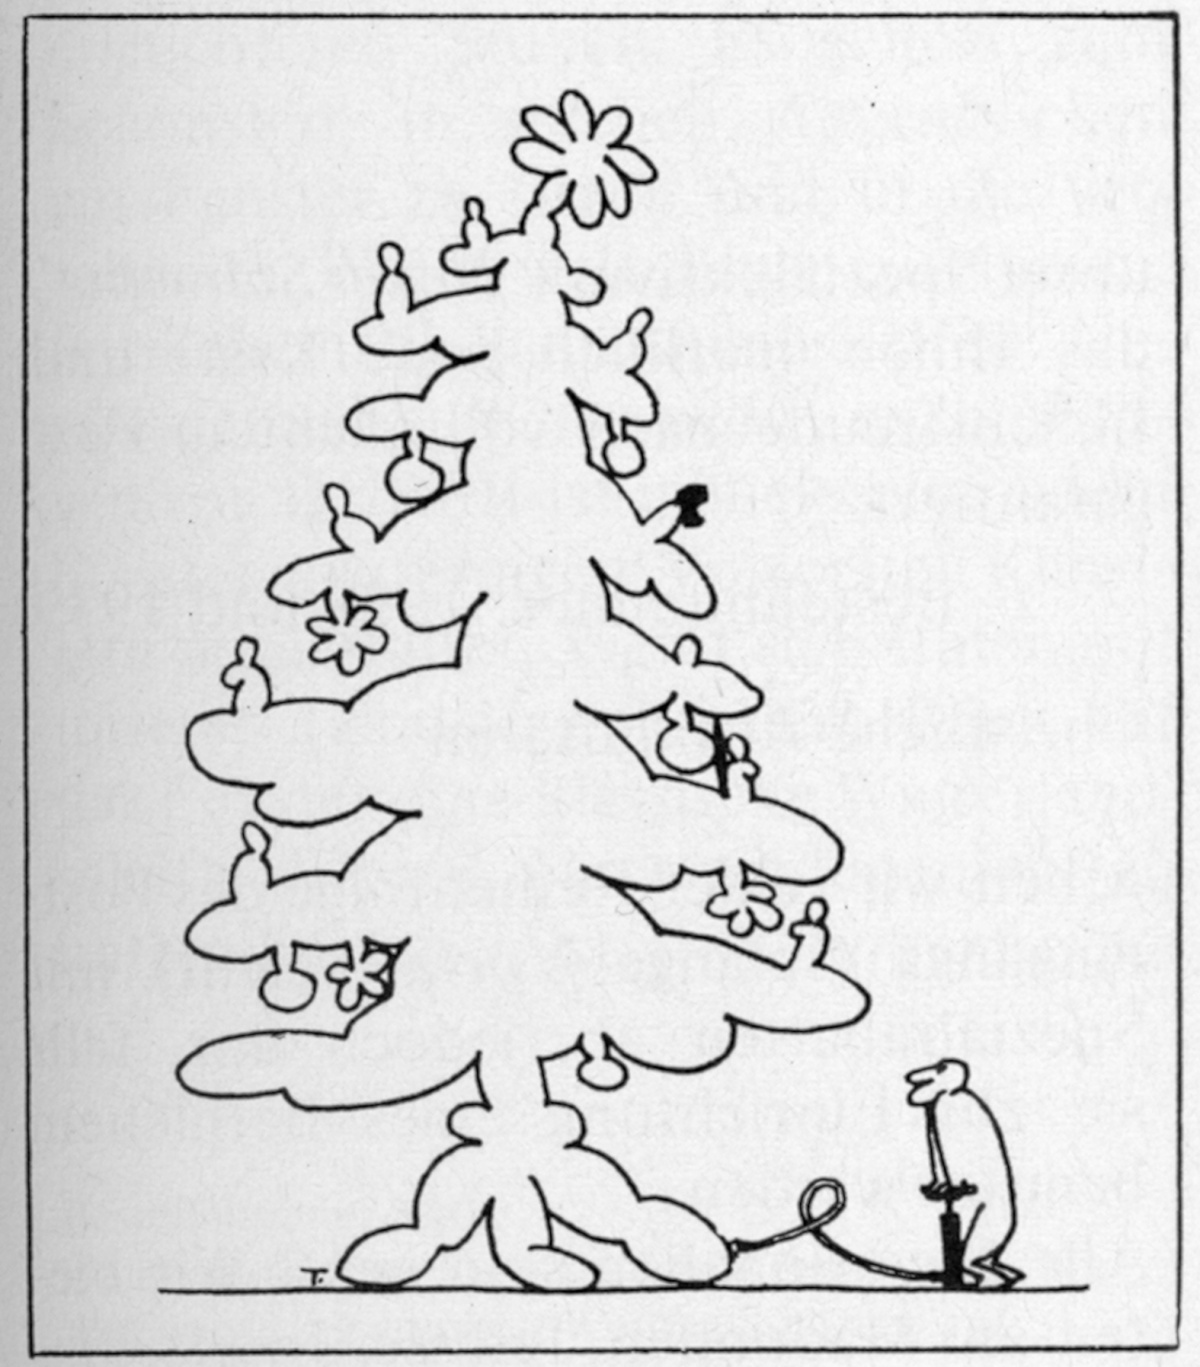 Bestellnummer 773, Bild: Pneumofix. Der Christbaum in der Westentasche.
Zeichnung: F. K. Wächter.